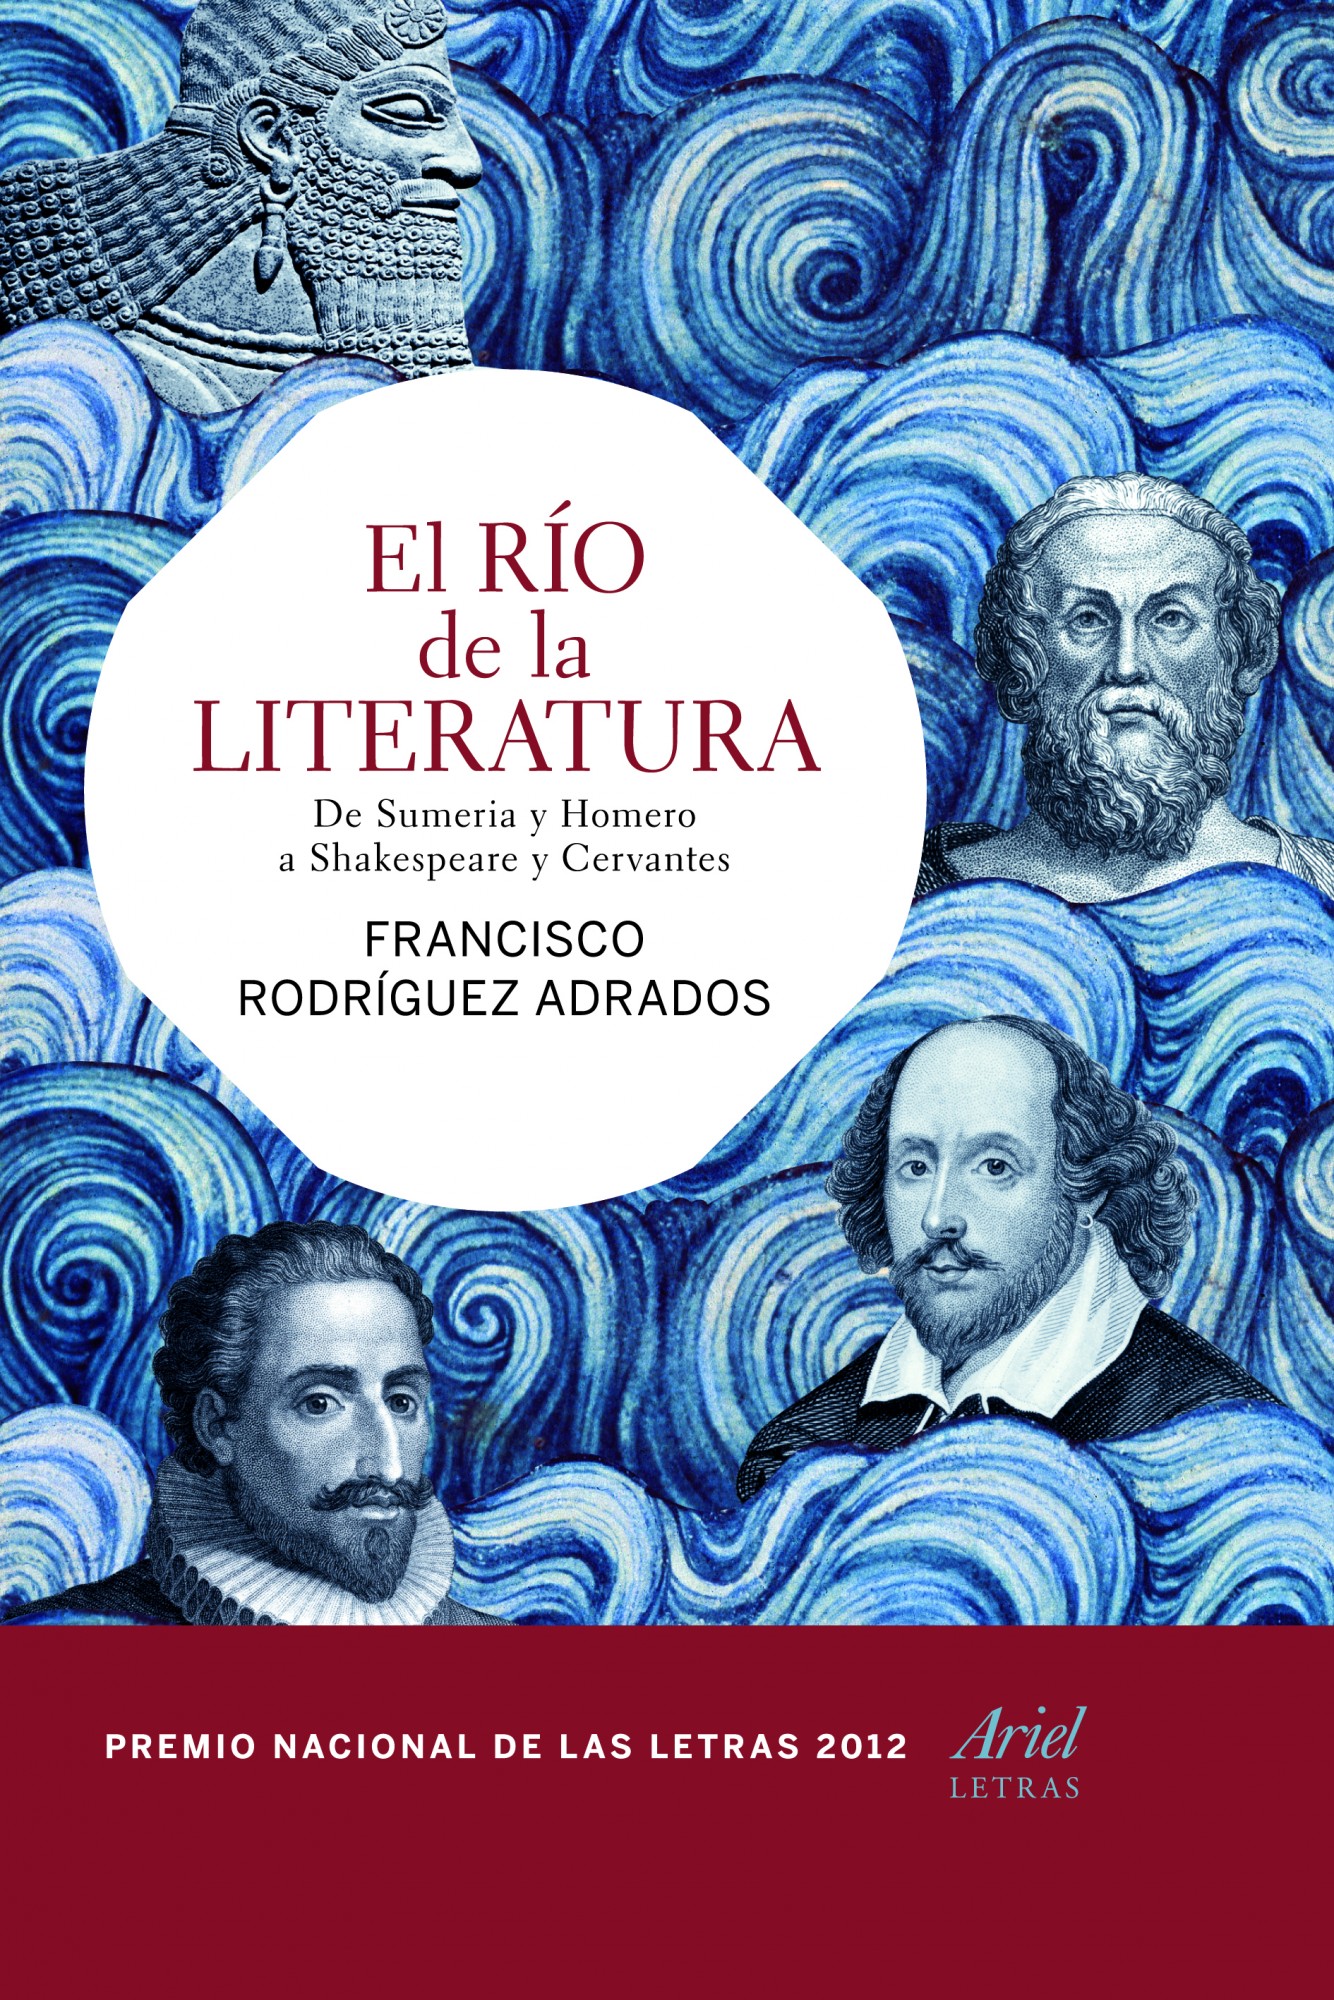 El río de la literatura: De Sumeria y Homero a Shakespeare y Cervantes